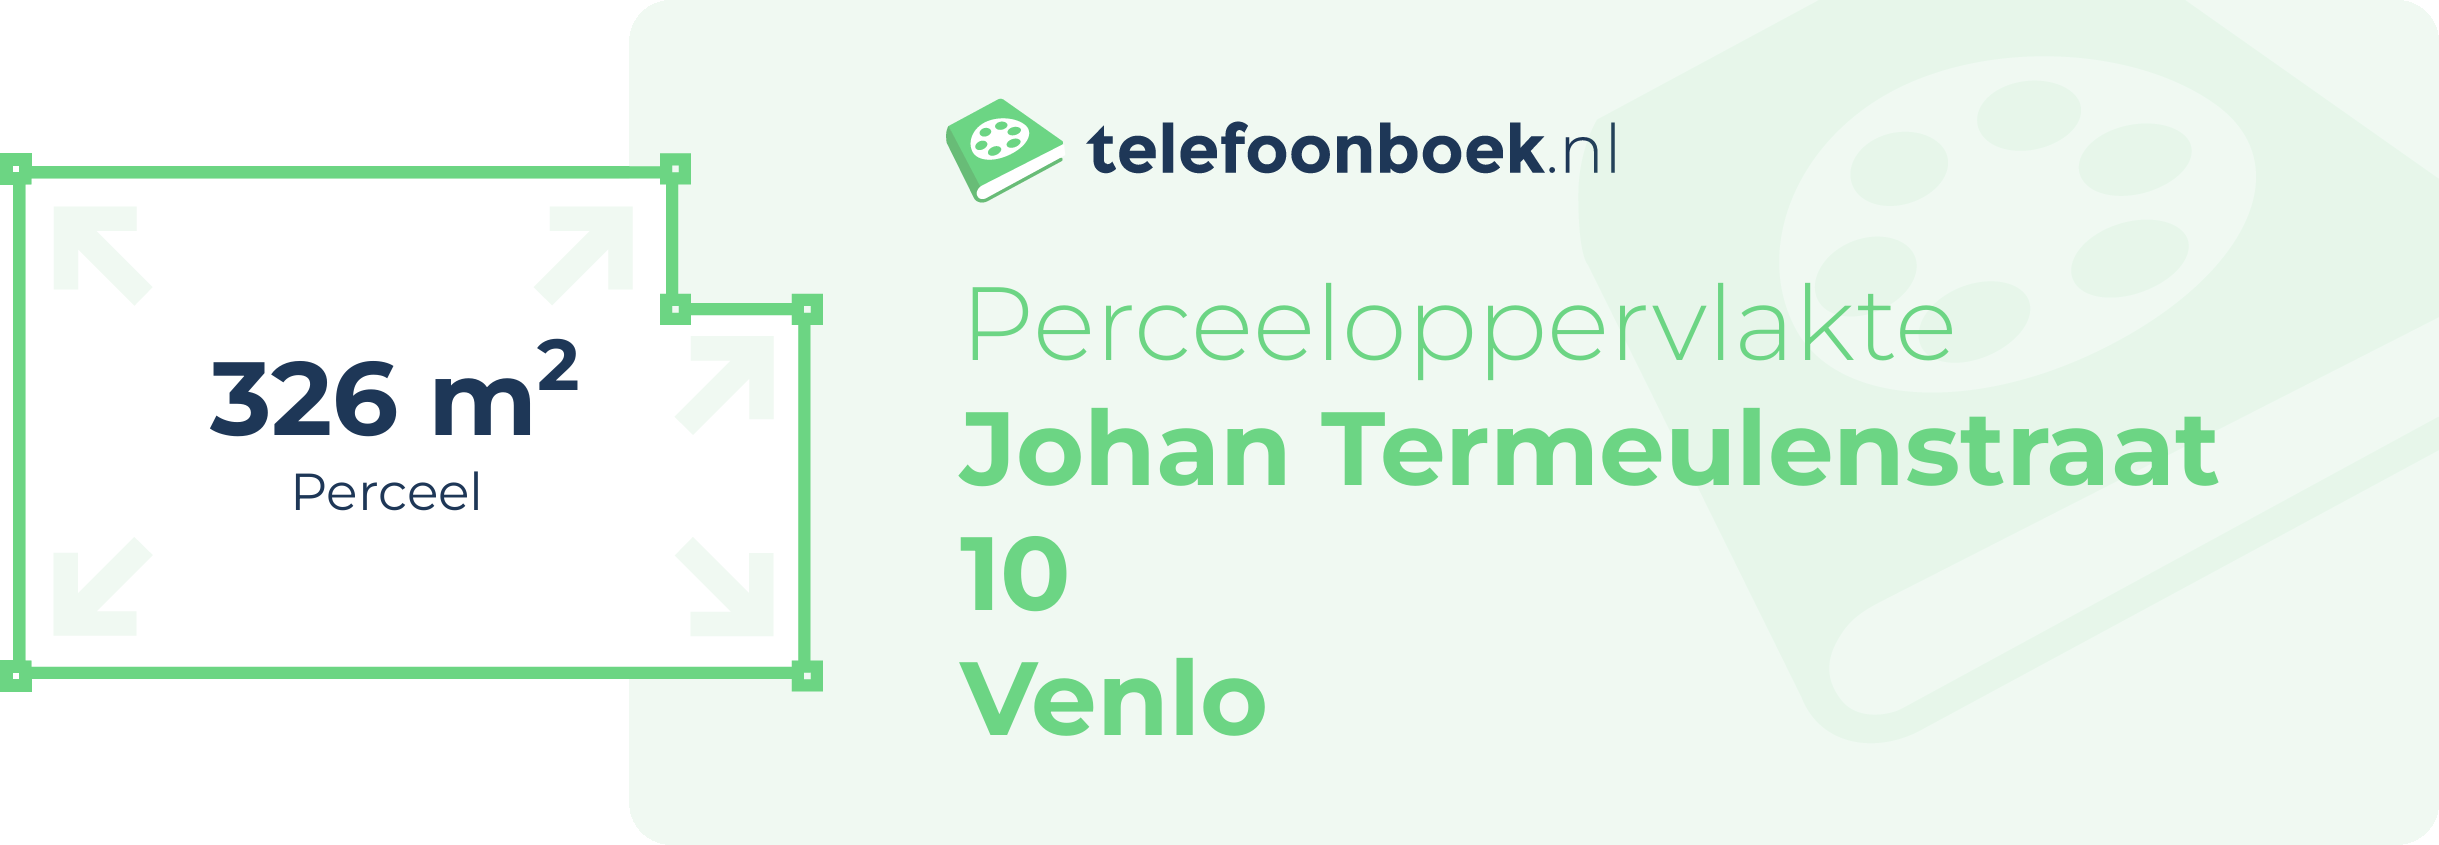 Perceeloppervlakte Johan Termeulenstraat 10 Venlo